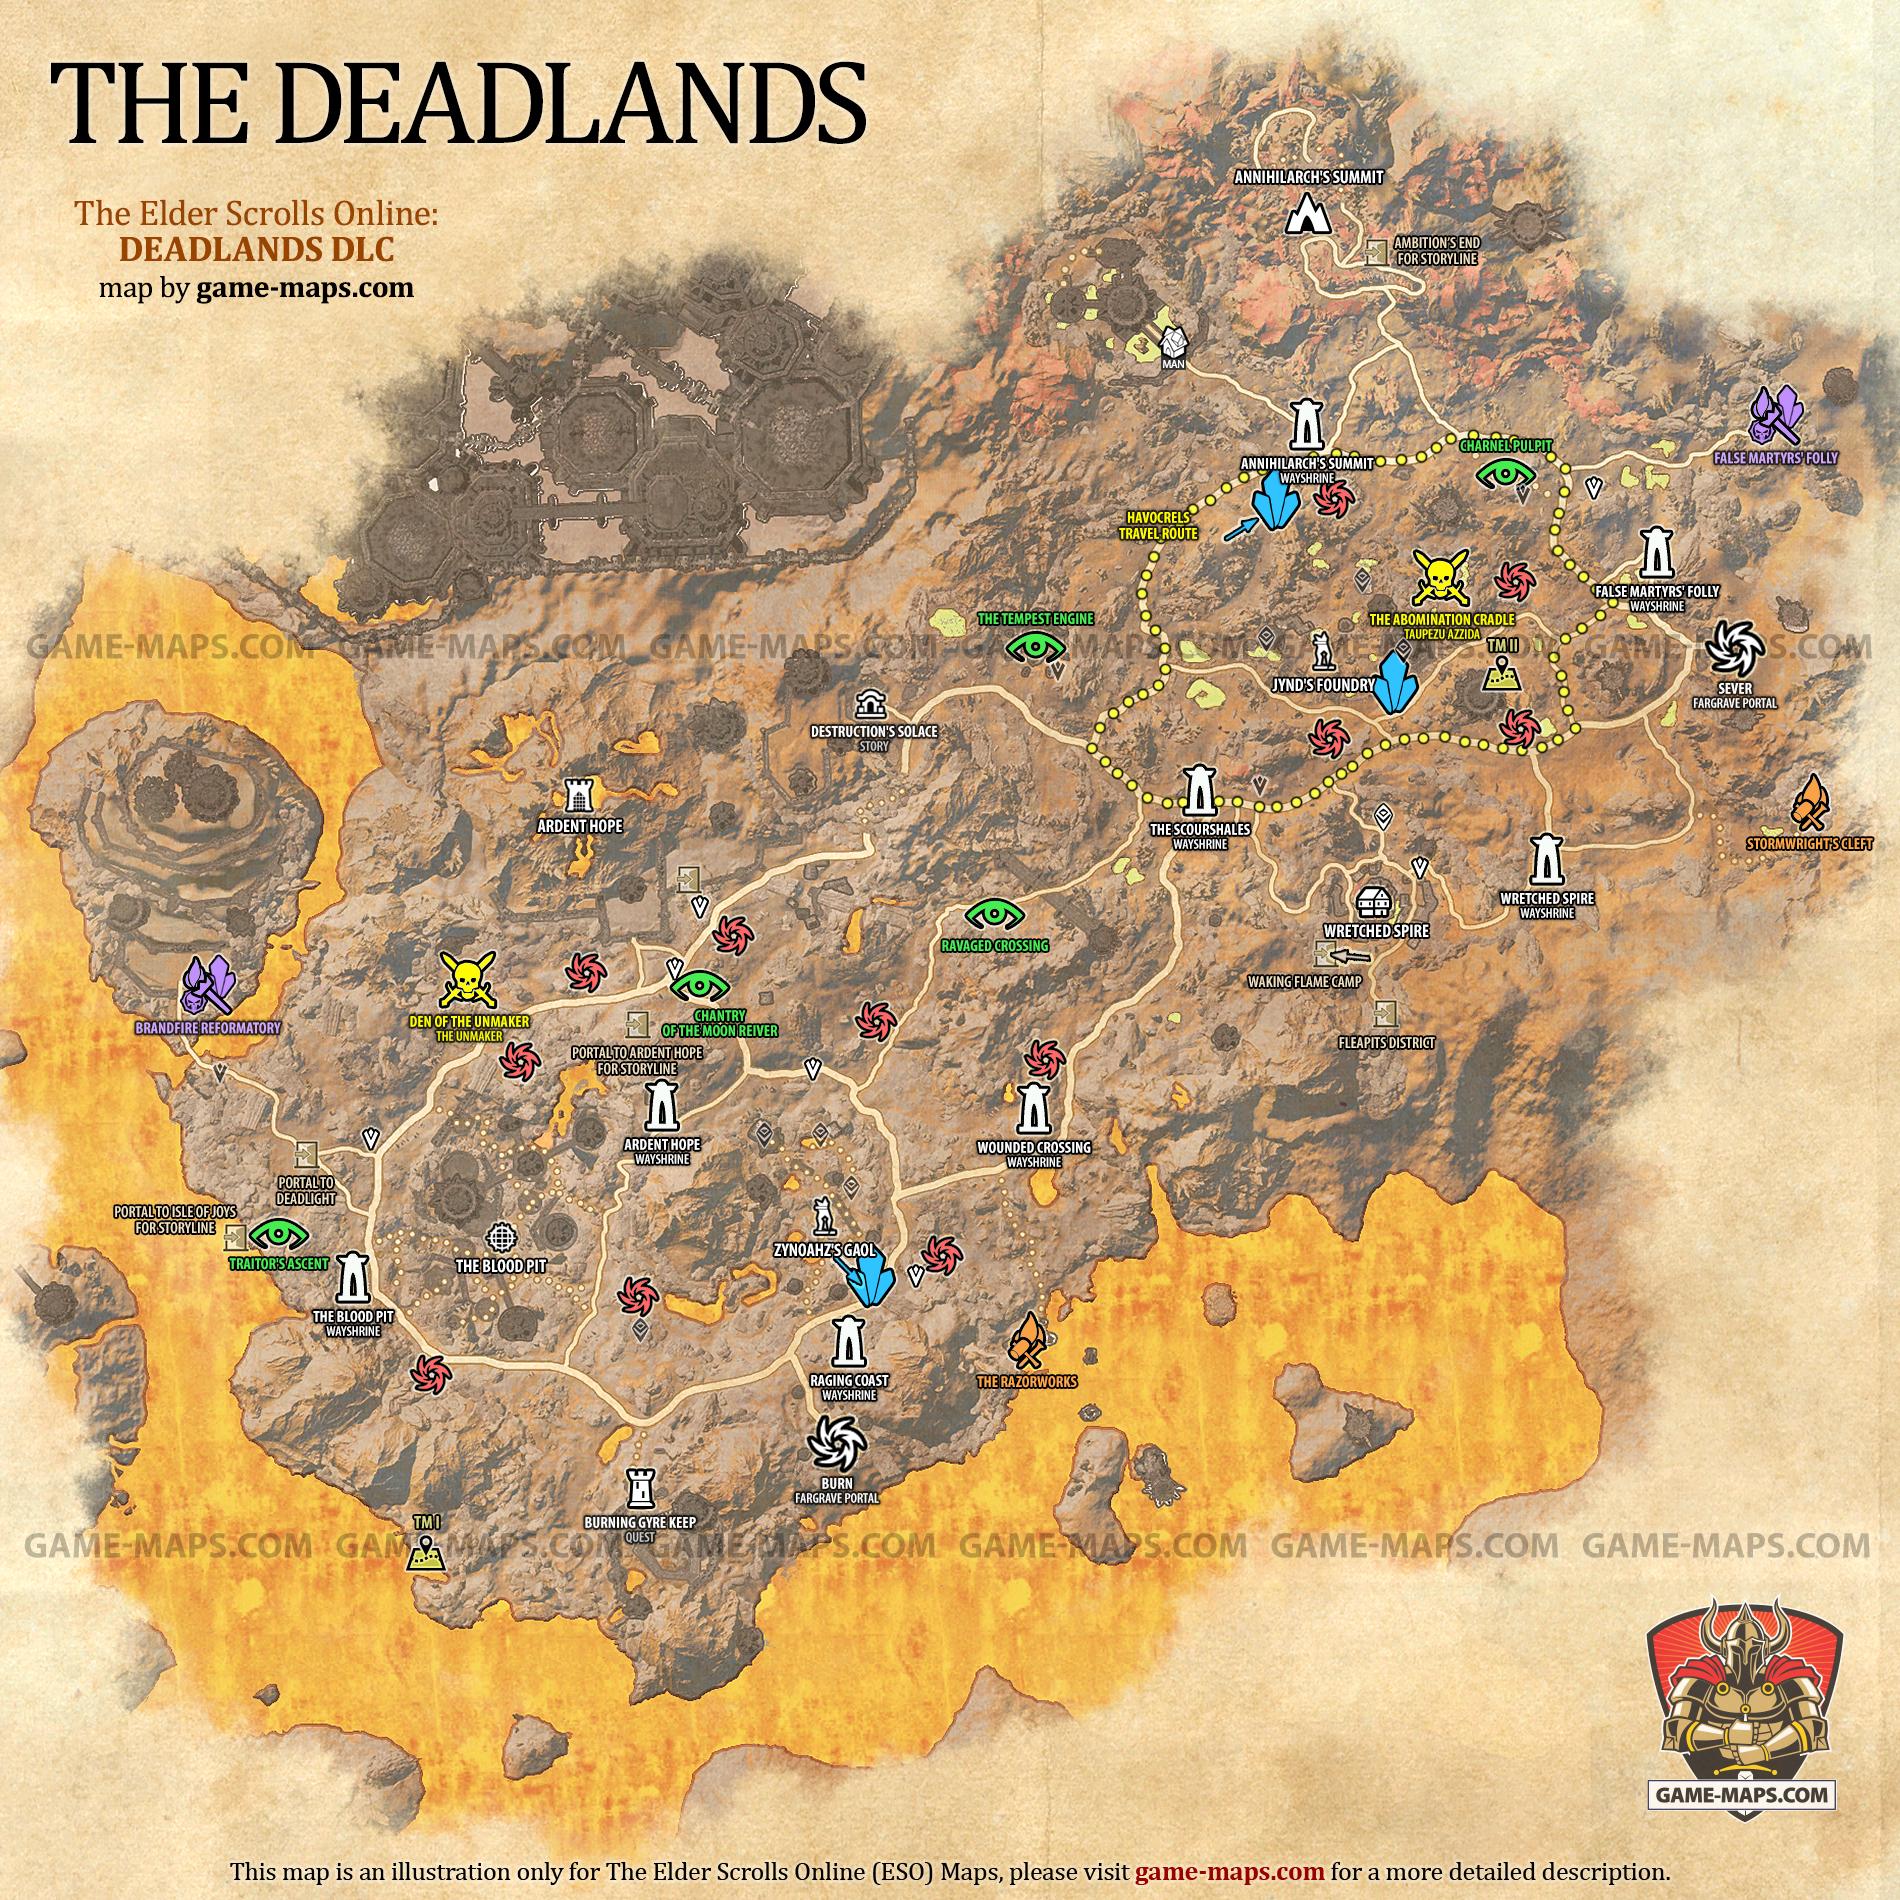 The Deadlands Map for The Elder Scrolls Online: Deadlands DLC, The Gates of Oblivion 2021 Adventure (ESO).